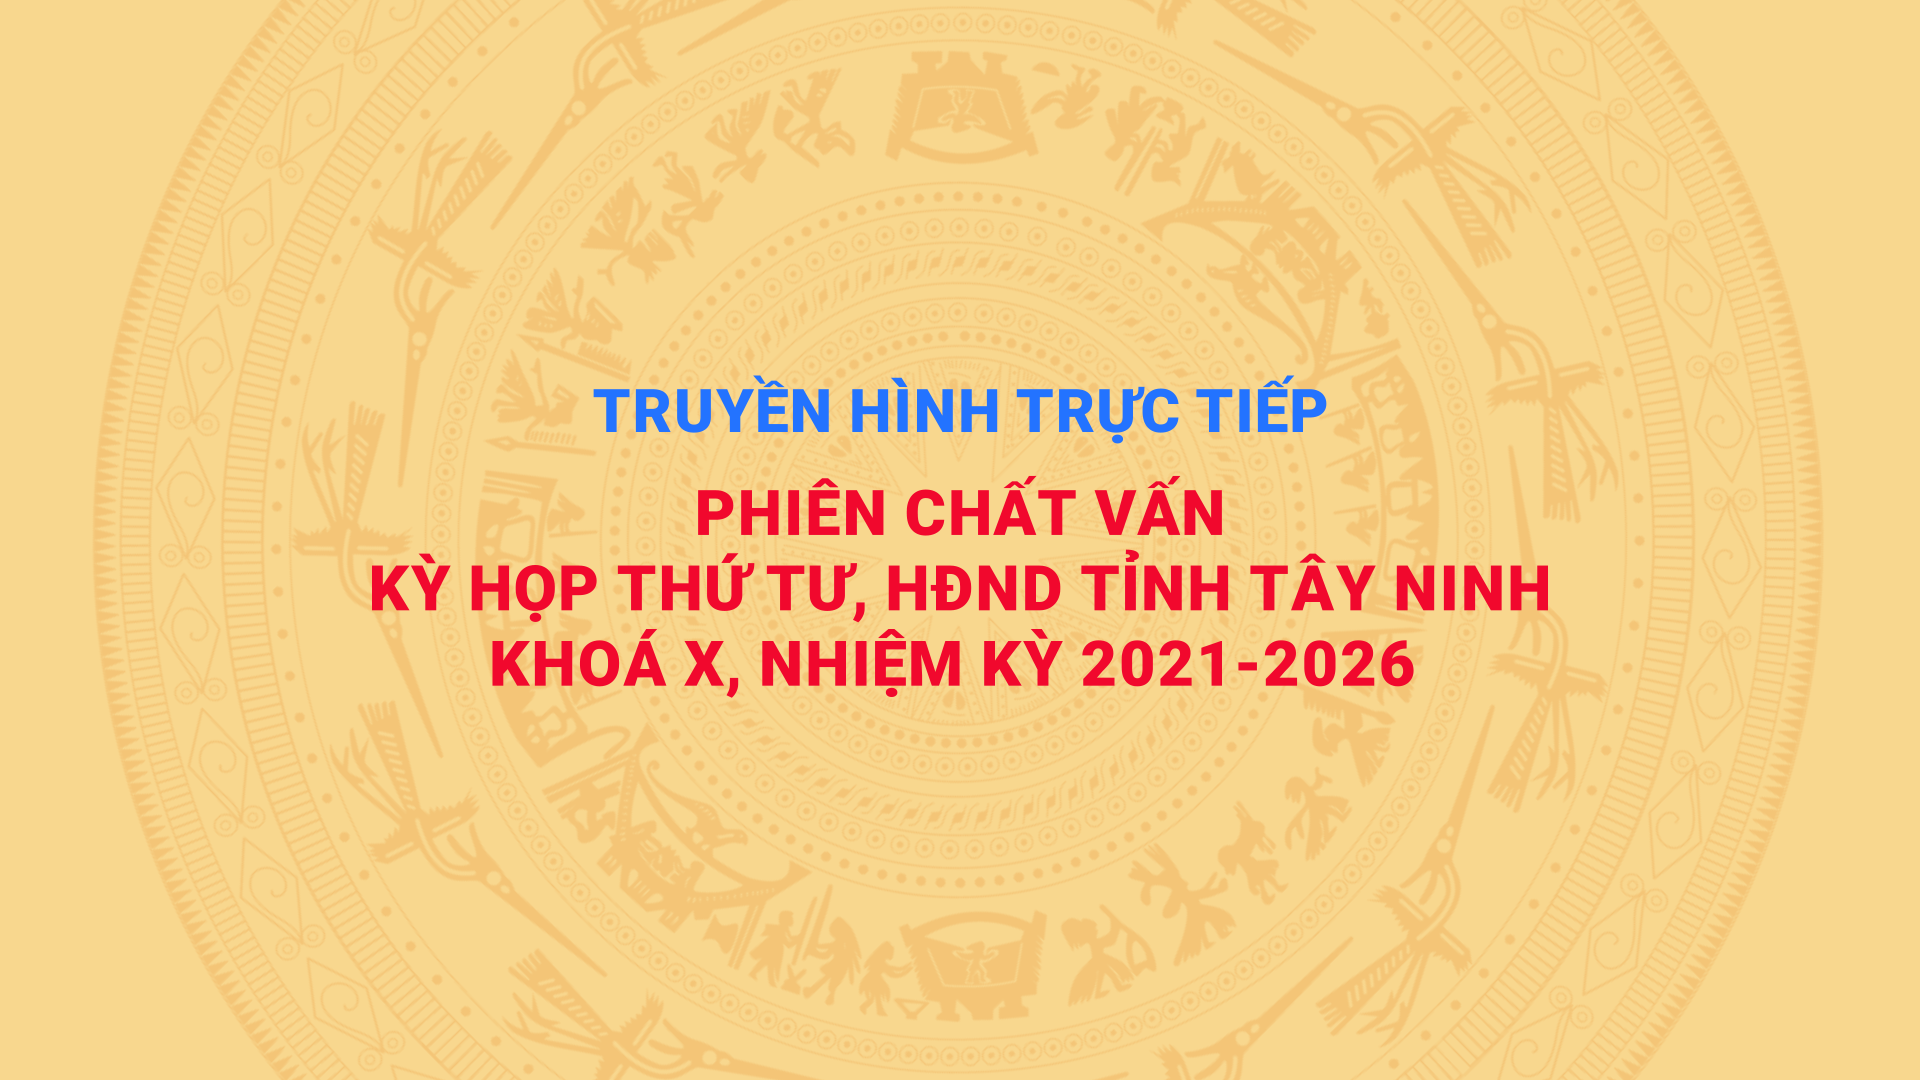 Phiên chất vấn Kỳ họp thứ 4, HĐND tỉnh Tây Ninh khóa X, nhiệm kỳ 2021-2026 | TayNinhTV @TayNinhTV Audio